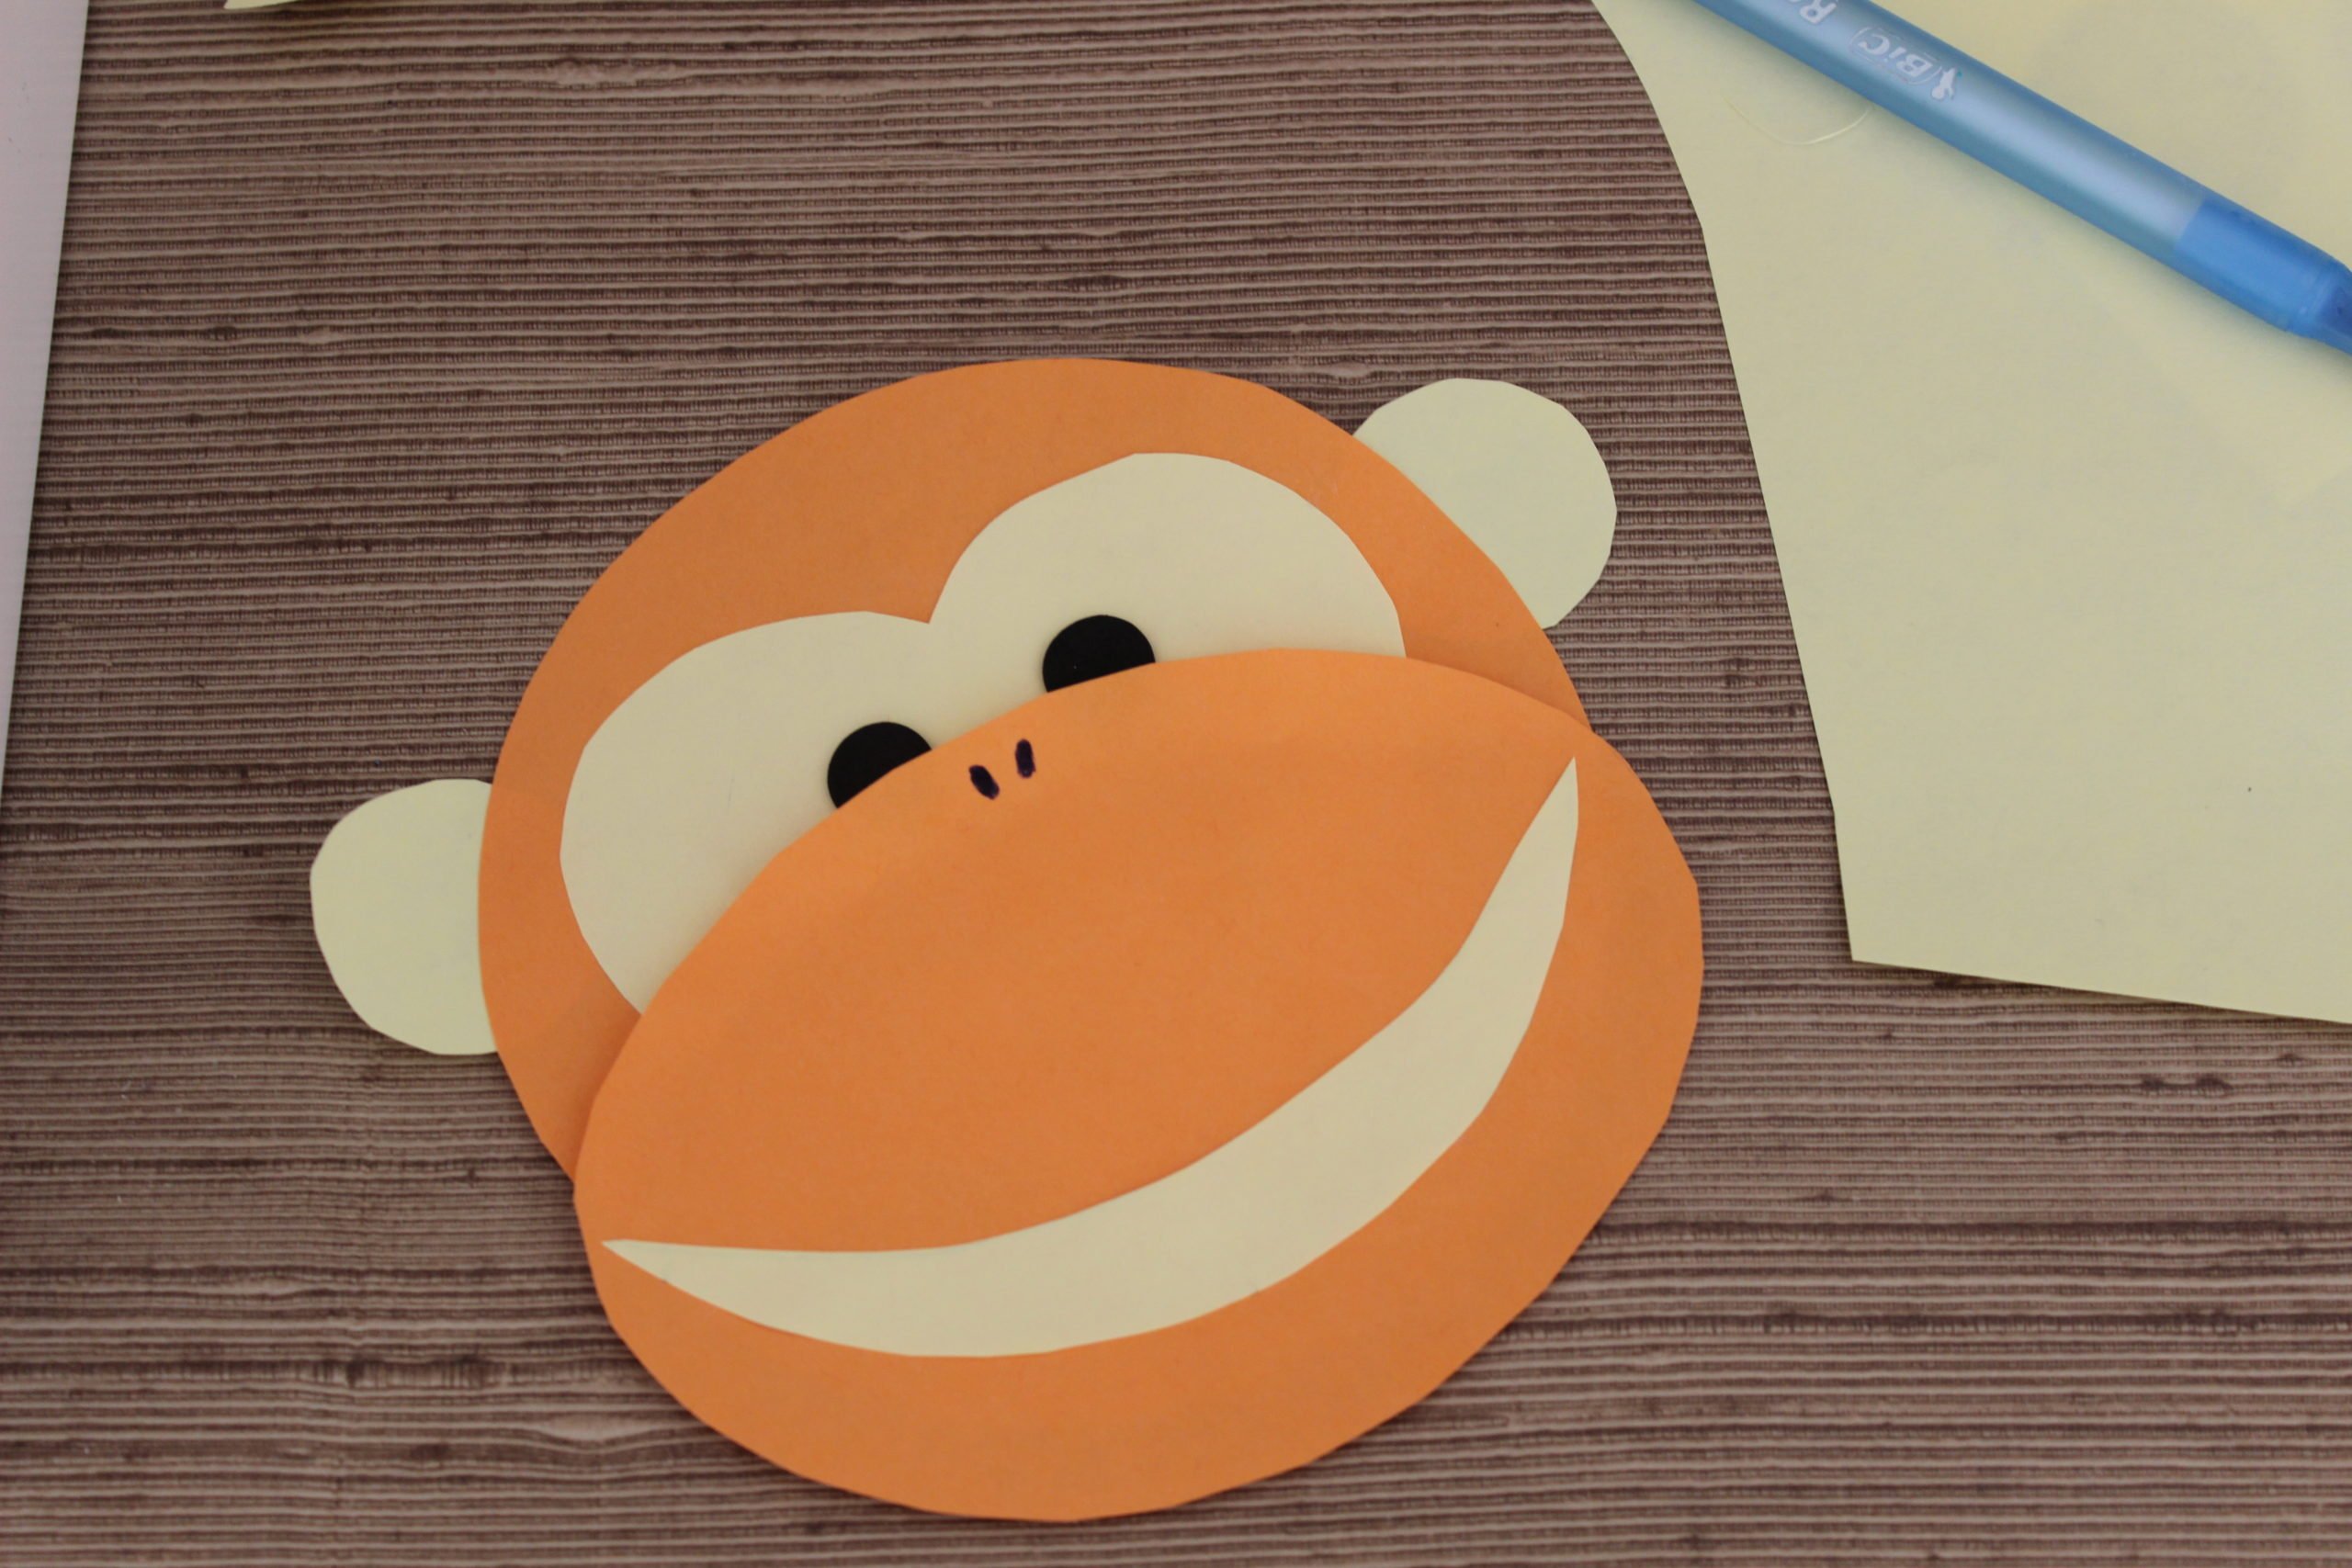 Małpka z papieru jak zrobić małpkę, zabawa plastyczna dla dzieci diy